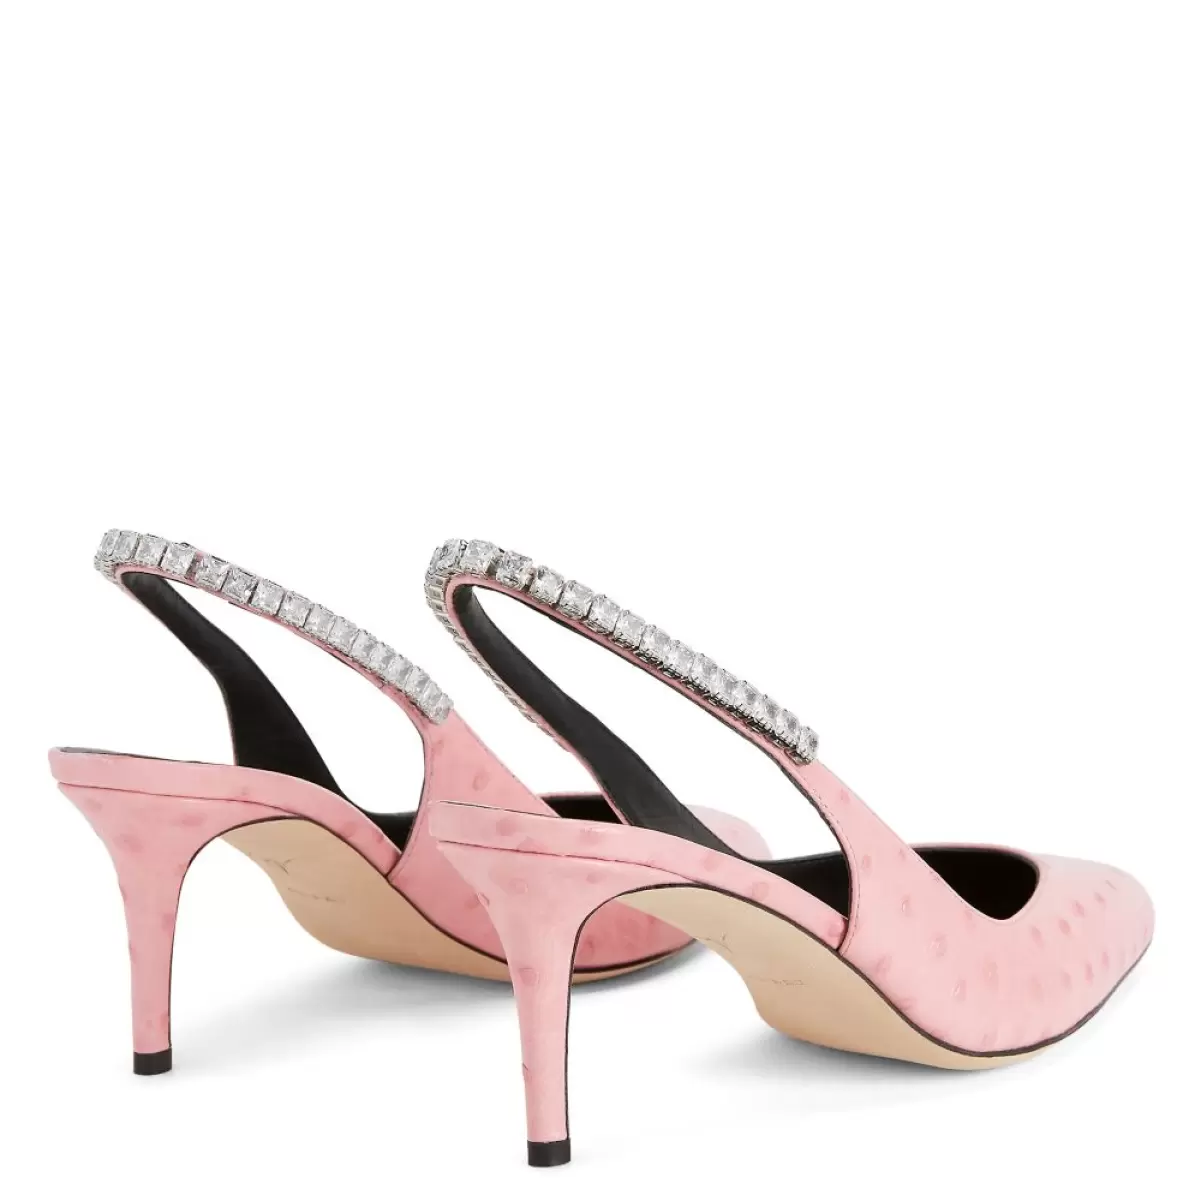 Rachyl Zapatos De Salón Giuseppe Zanotti Mujer Rosa - 3